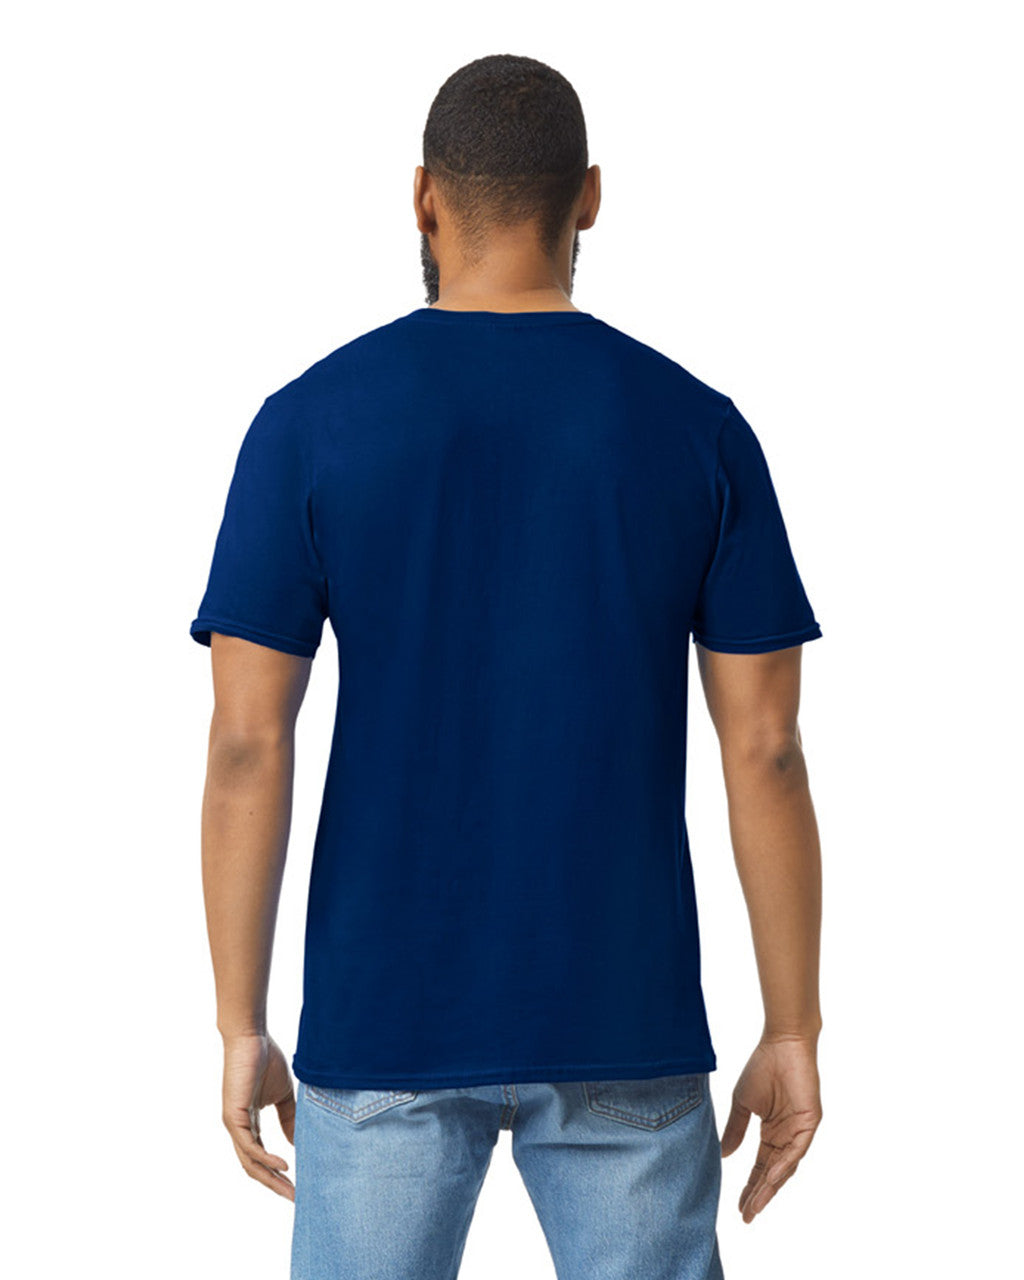 Camiseta Adulto Ring Spun Azul Marino Gildan Ref. 64000